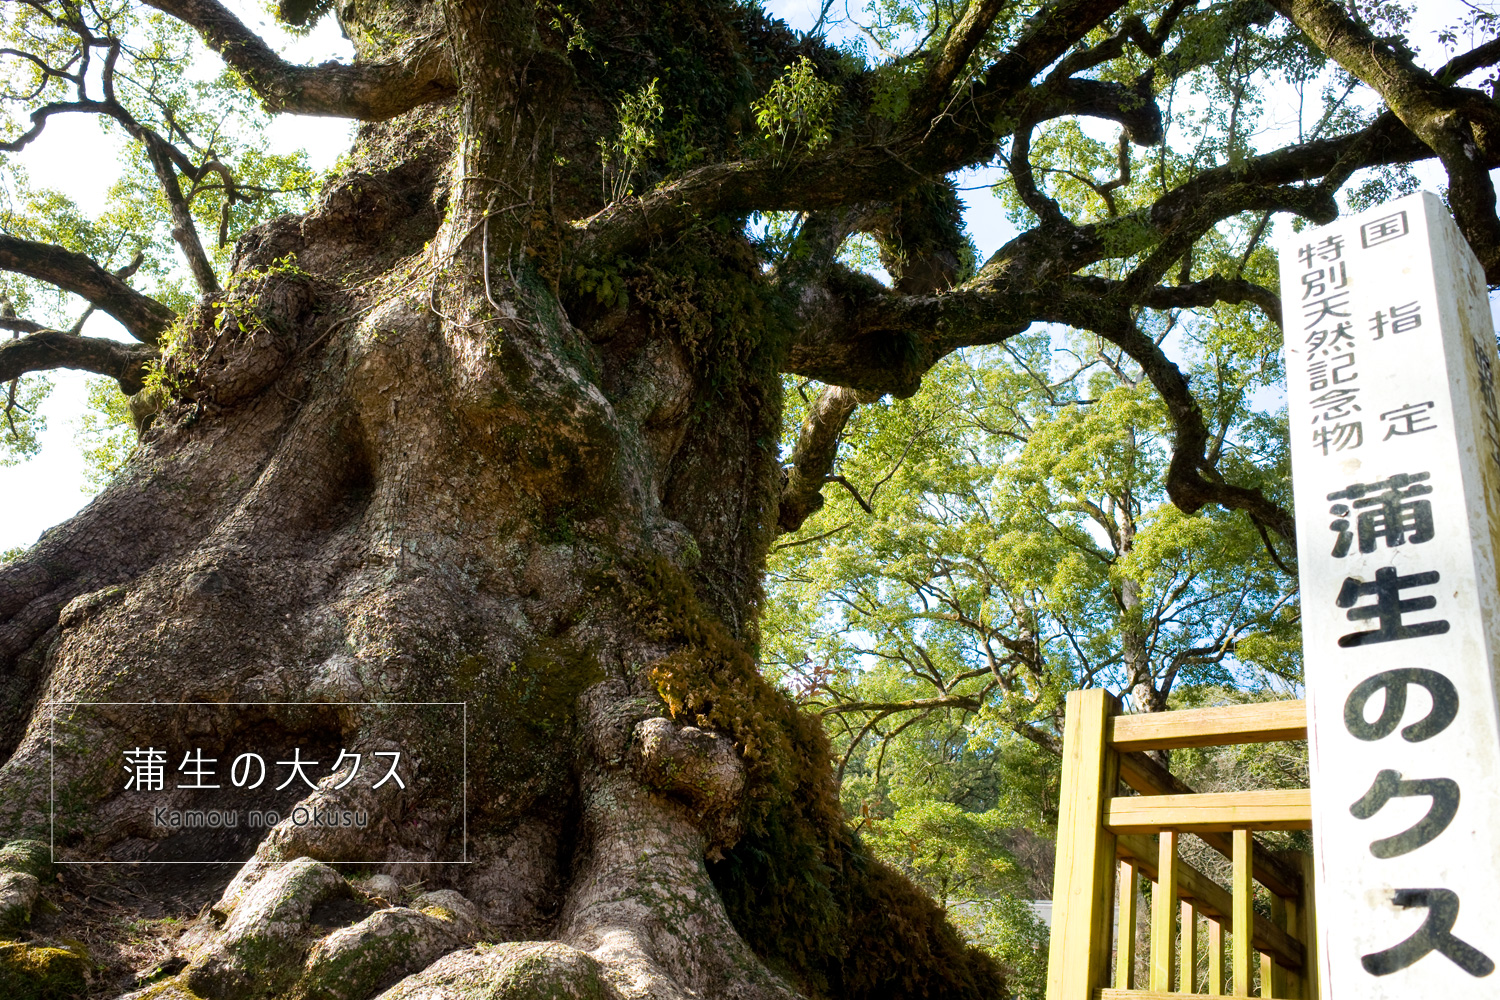 日本一の巨樹「蒲生の大クス」蒲生八幡神社/姶良市蒲生